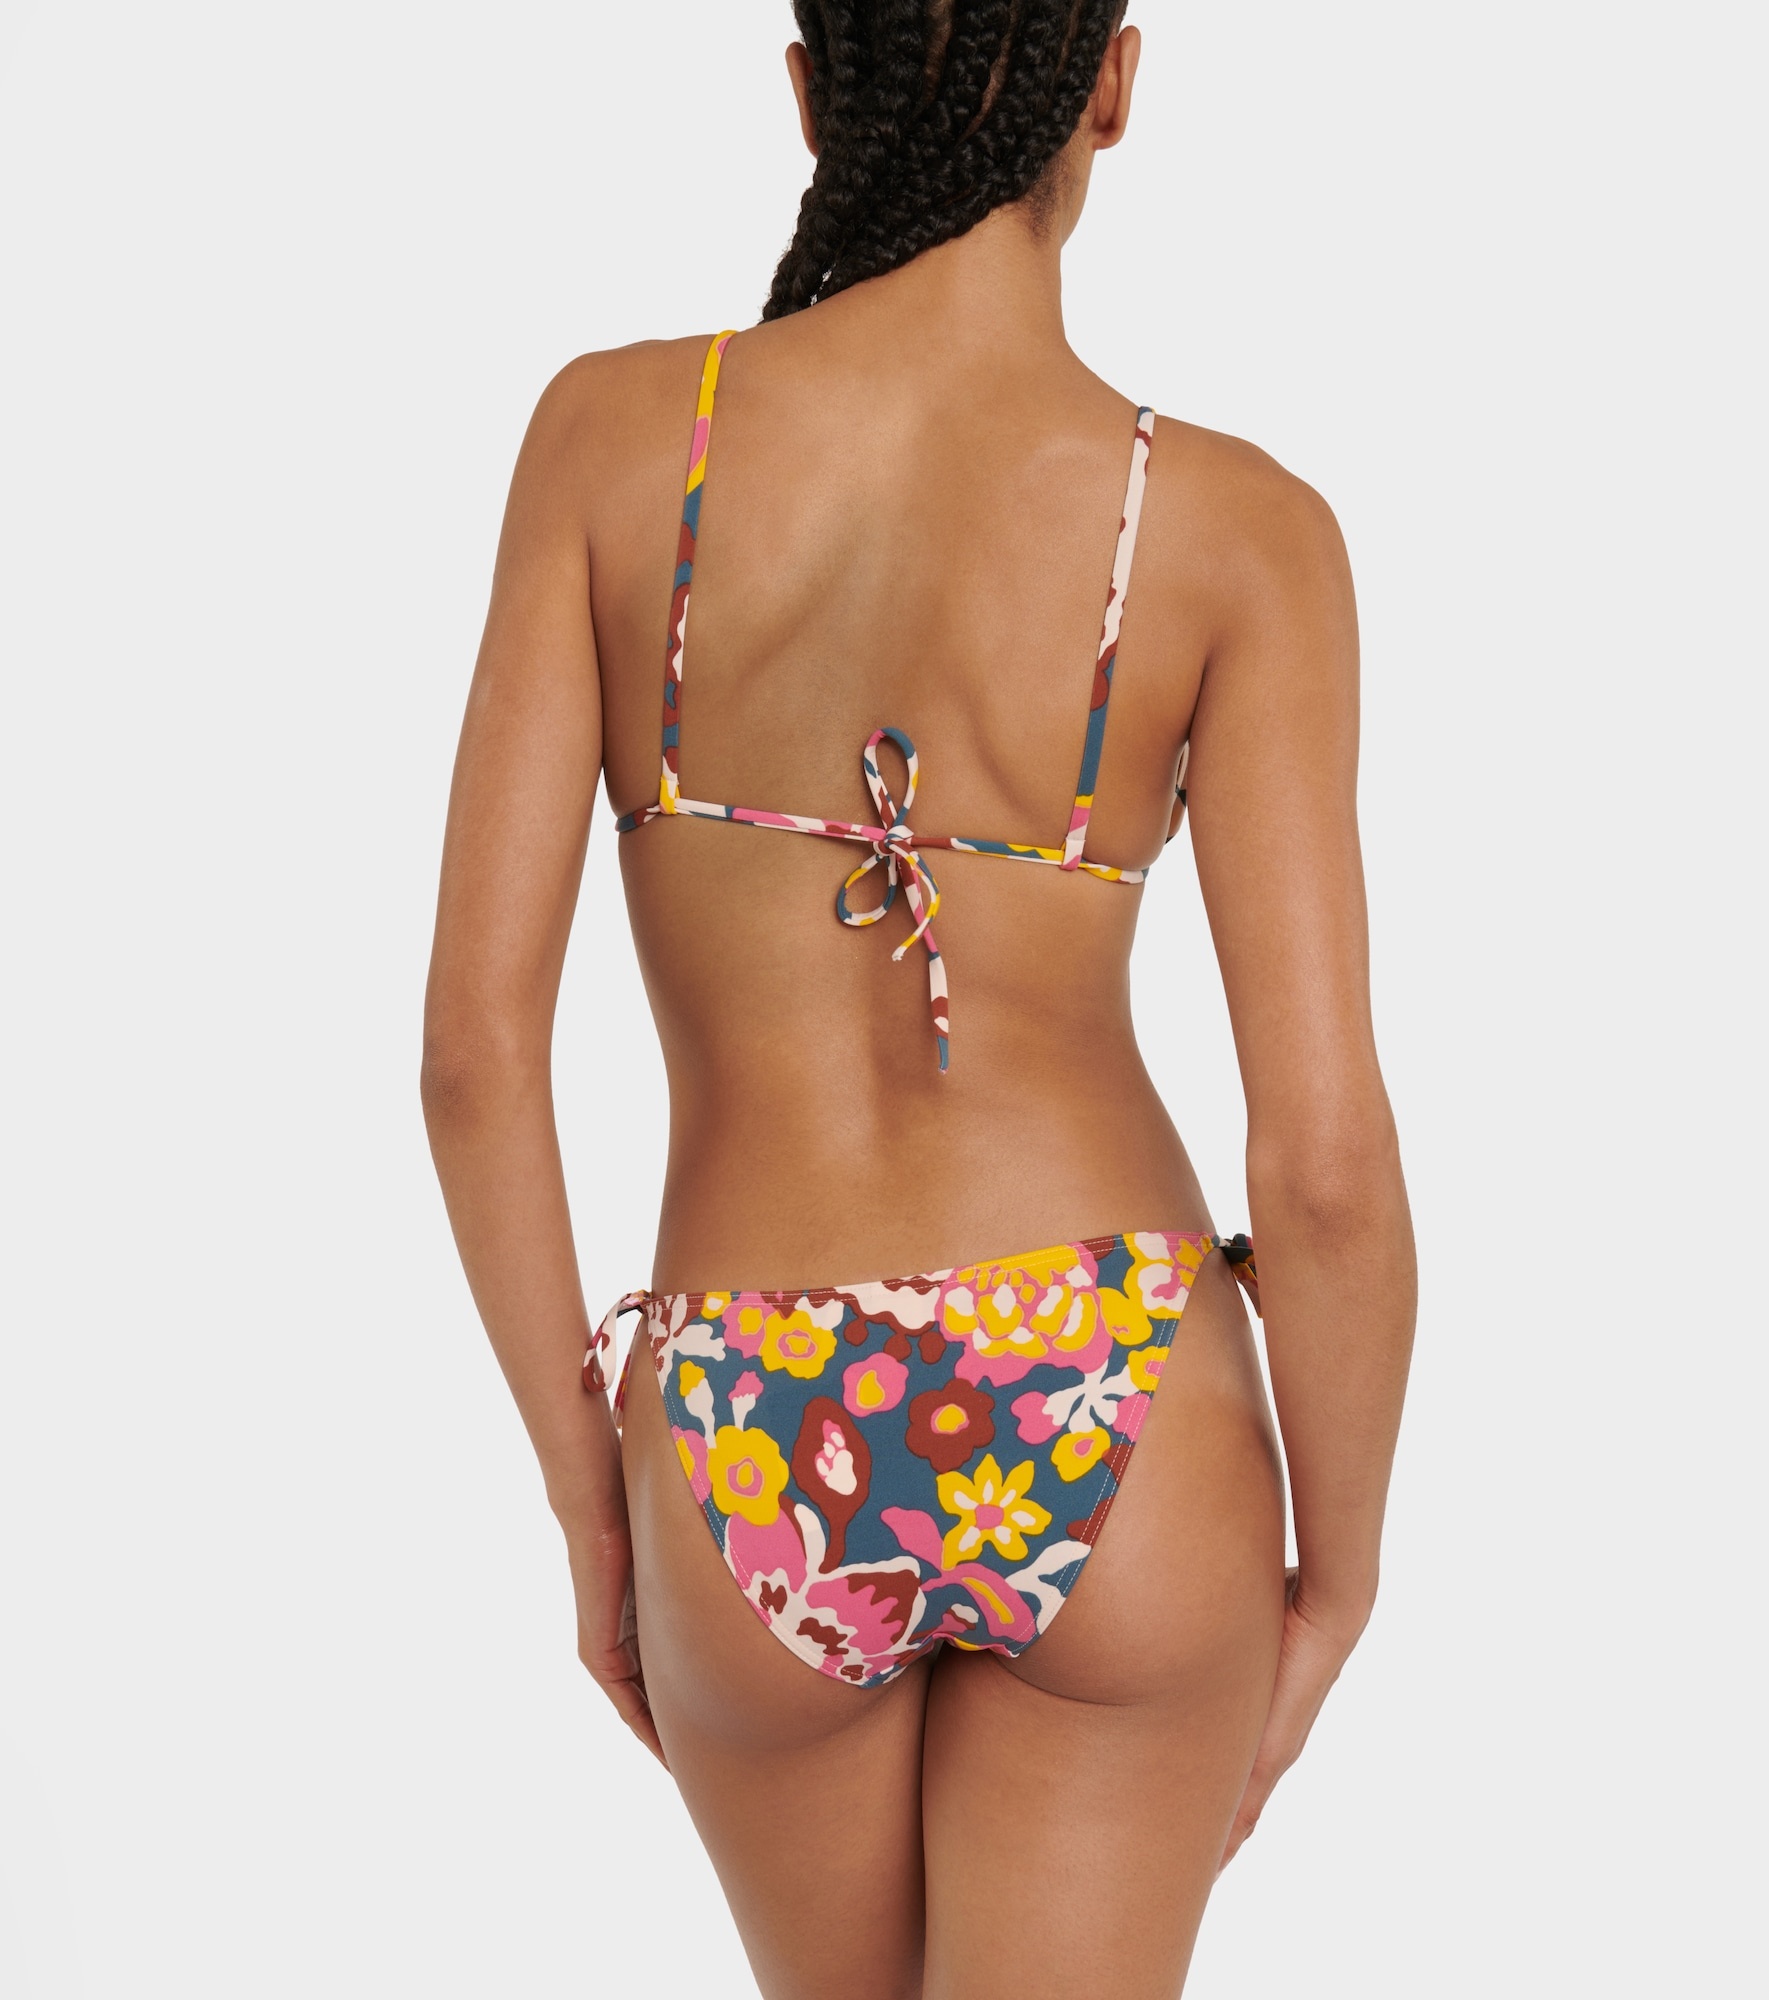 Kiwi printed triangle bikini top - 3